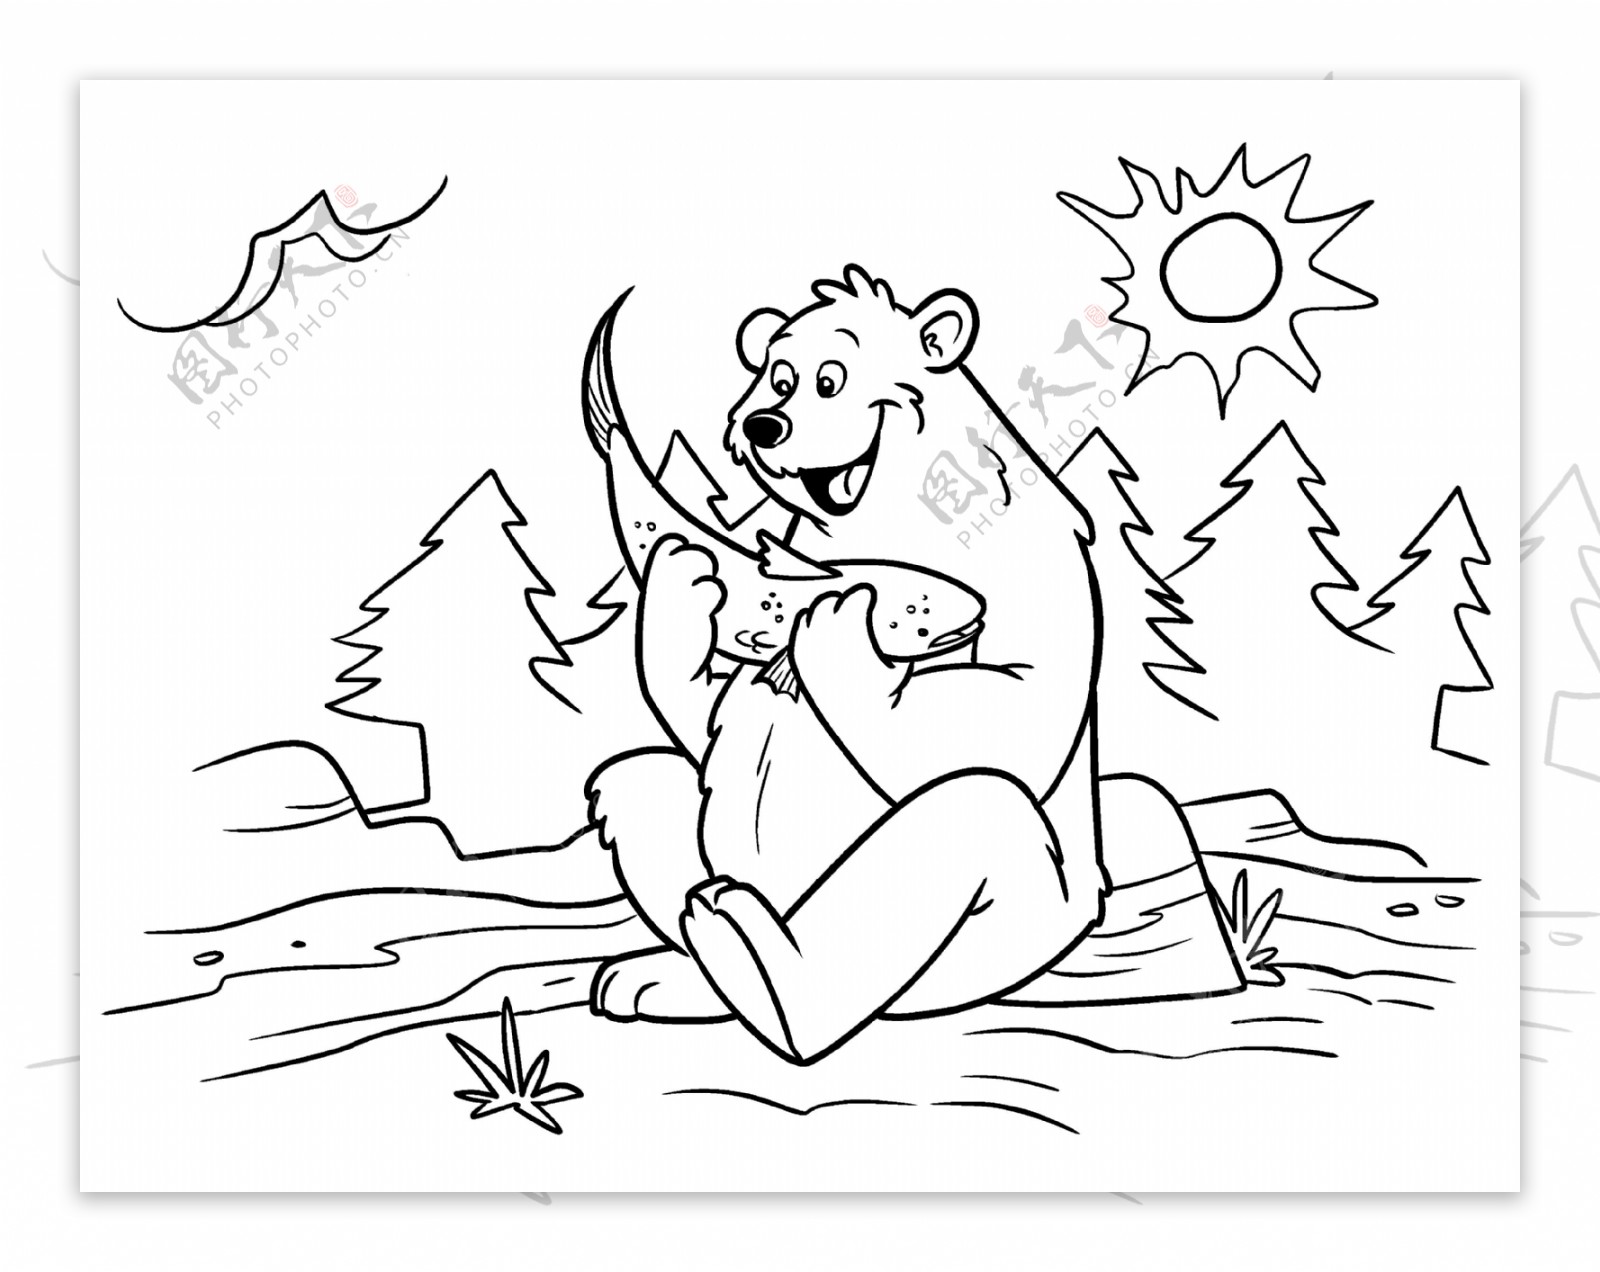 儿童插画北极熊